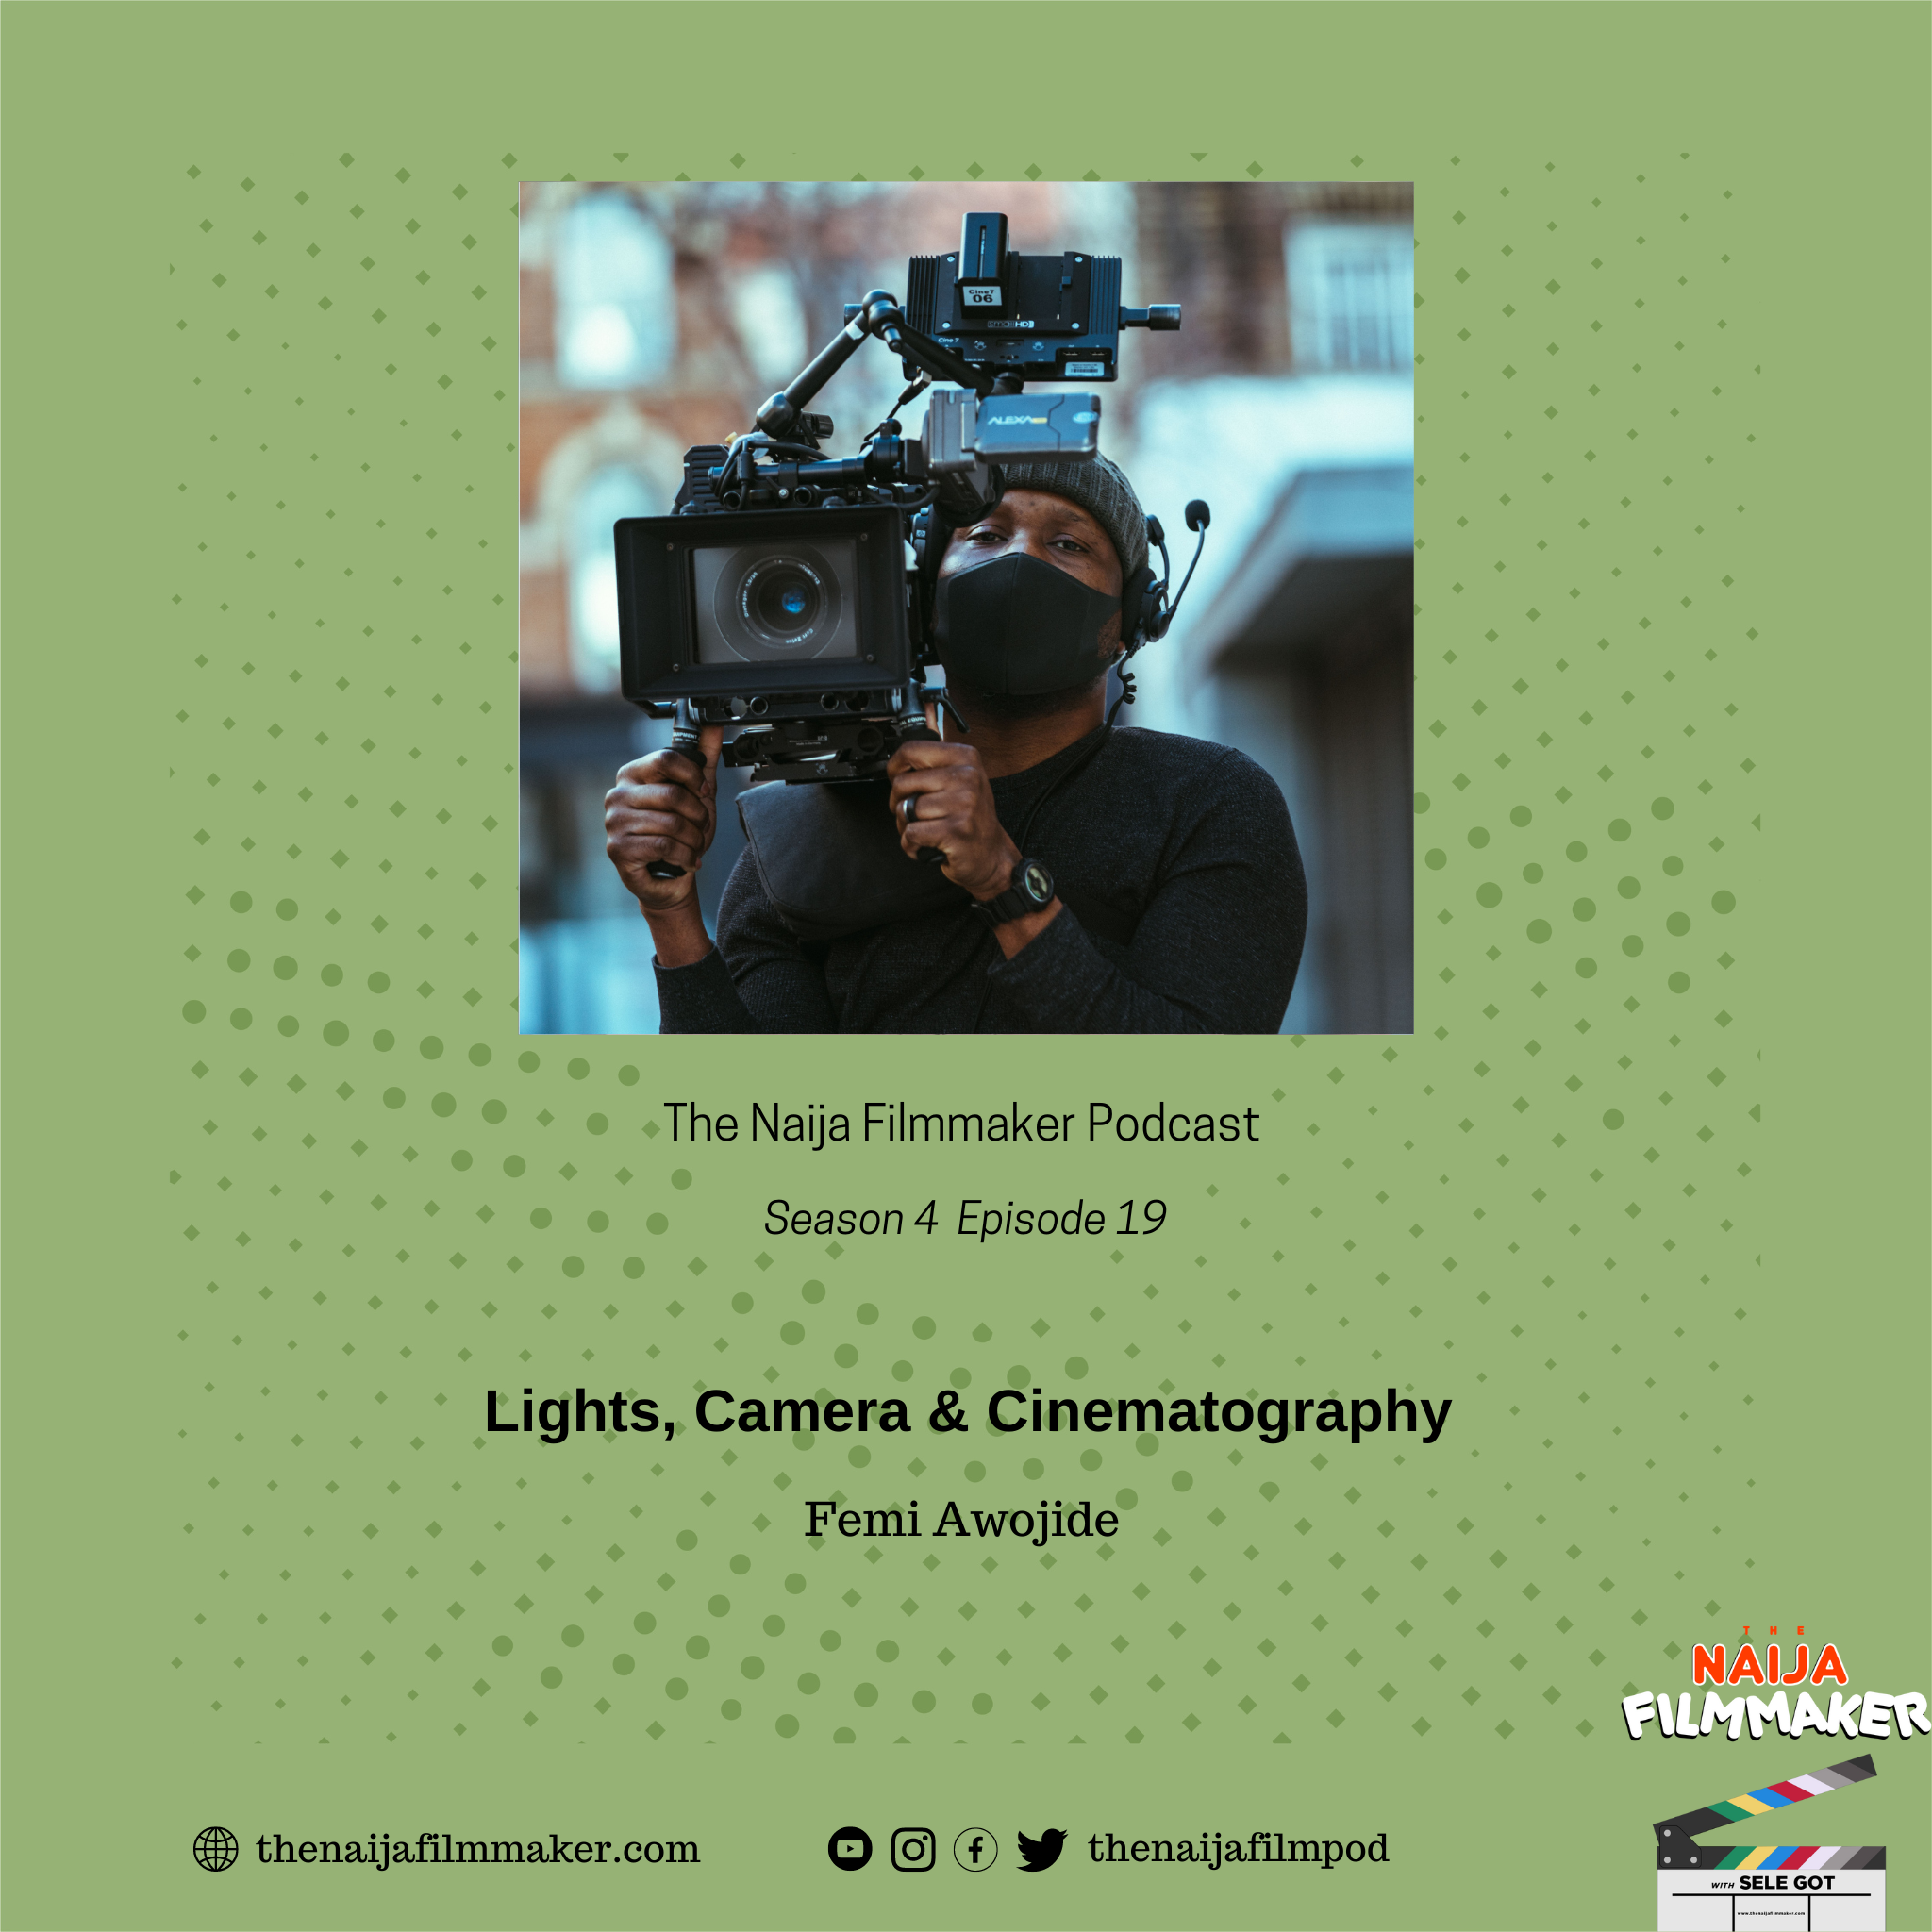 Artwork for podcast The Naija Filmmaker